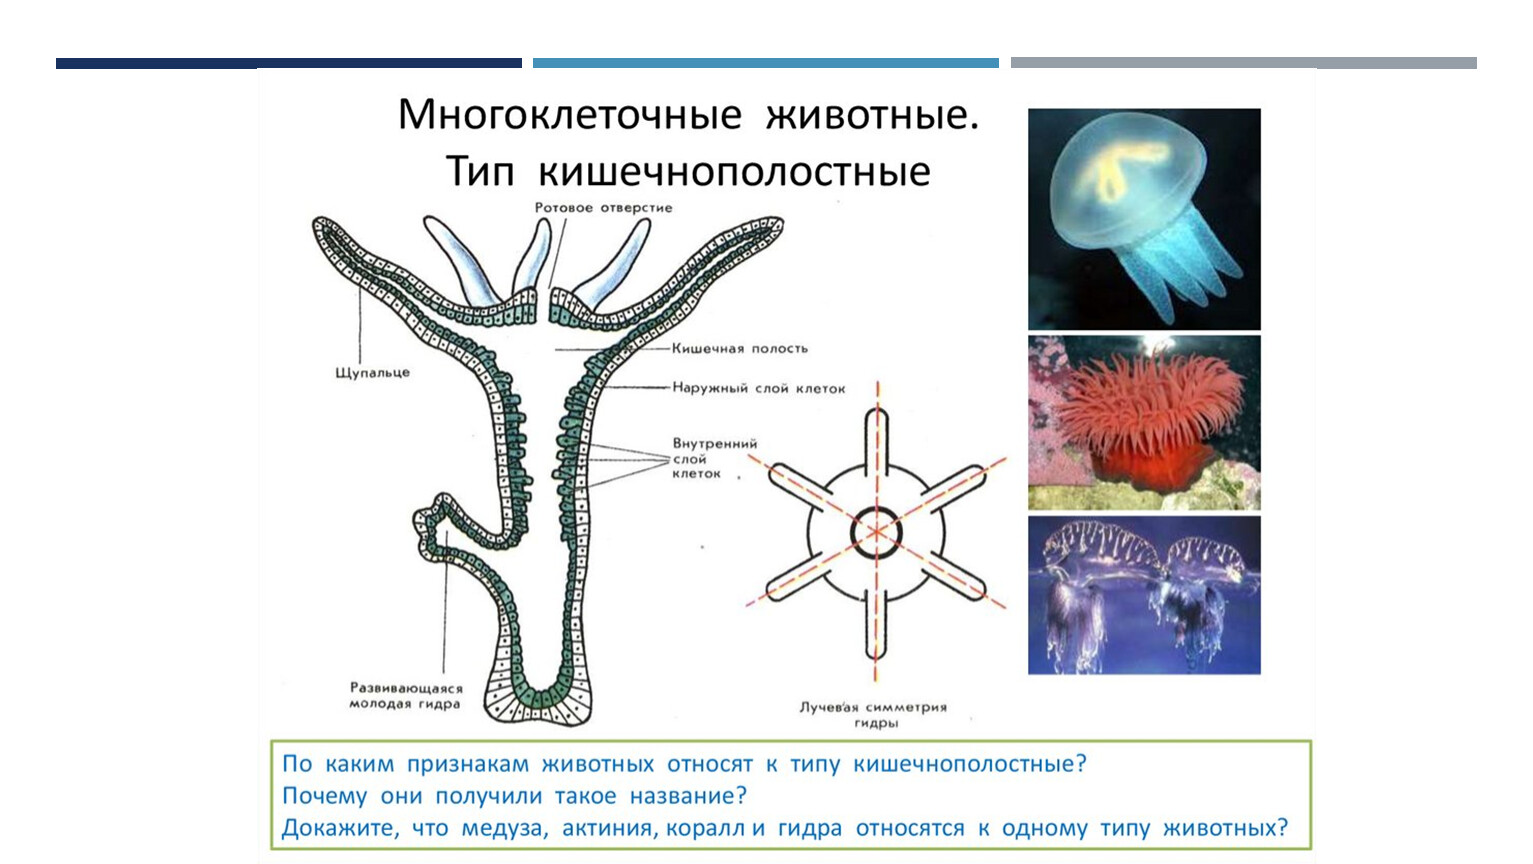 Группы организмов кишечнополостные. Кишечнополостные гидра медузы кораллы. Тип Кишечнополостные строение медузы. Многоклеточные животные Тип Кишечнополостные. Гидроидные Сцифоидные коралловые полипы.